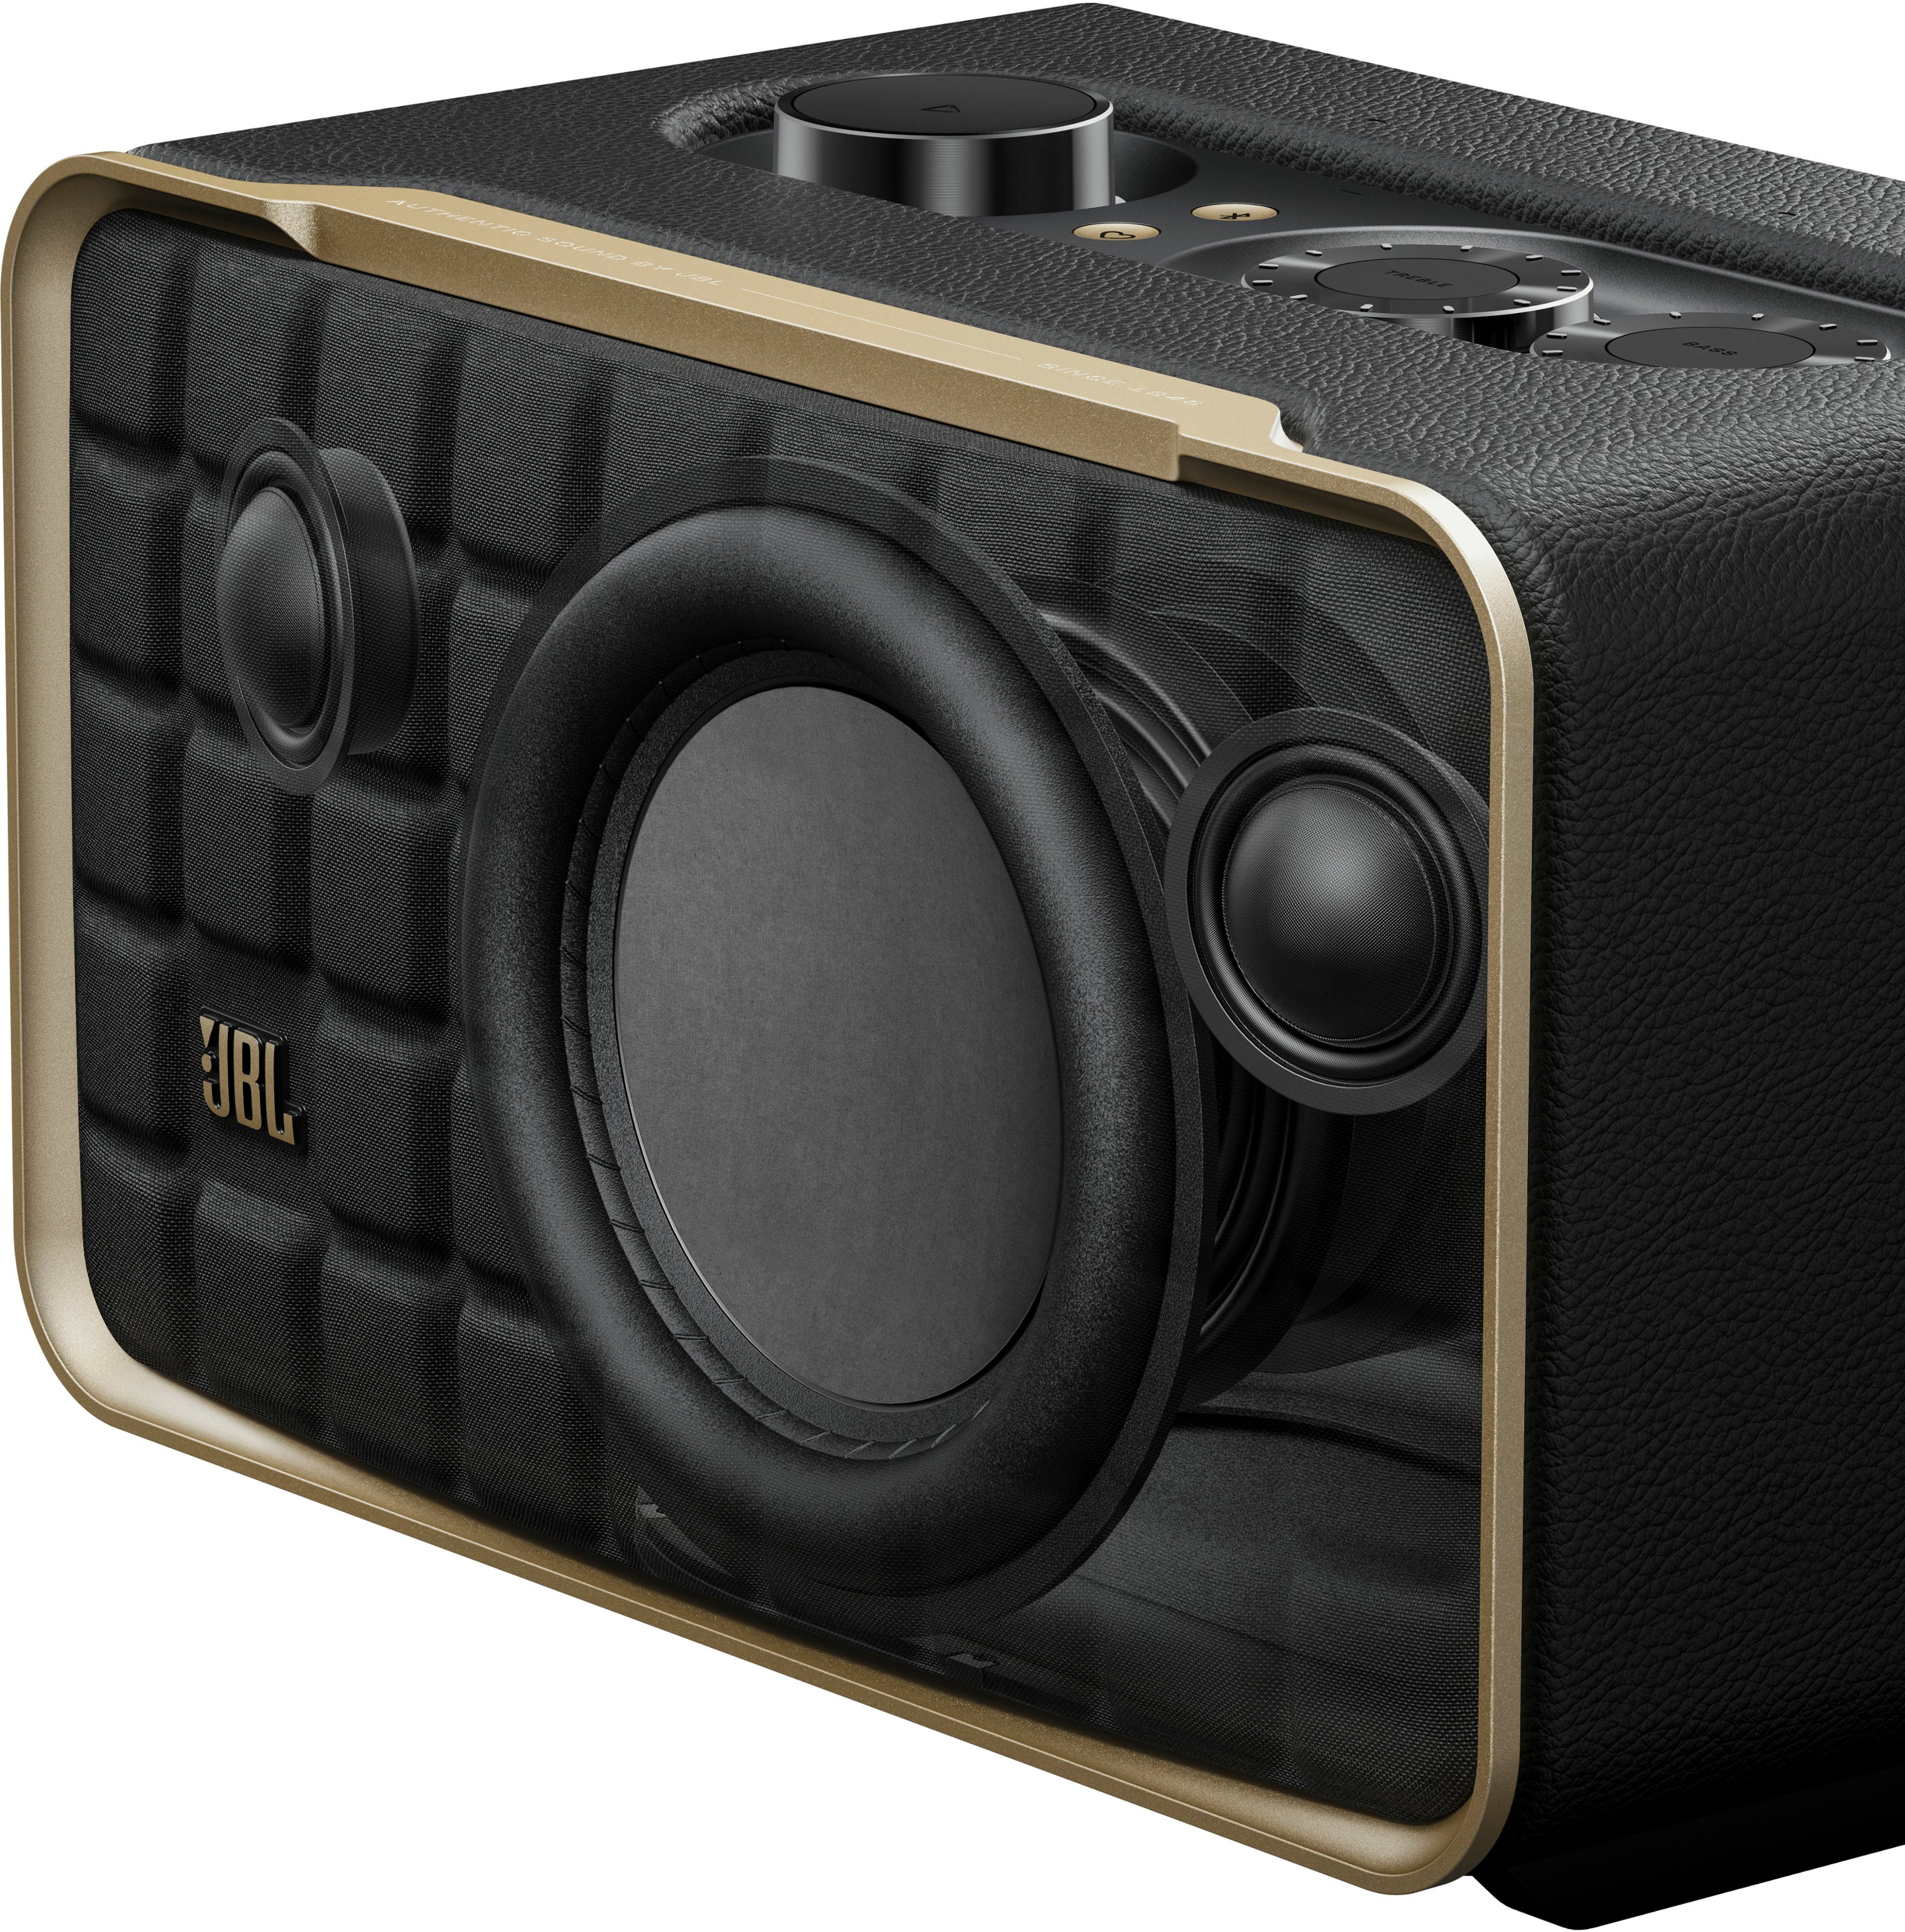 JBL Authentics 200 Smart Home Speaker Black JBLAUTH200BLKAM - Best Buy